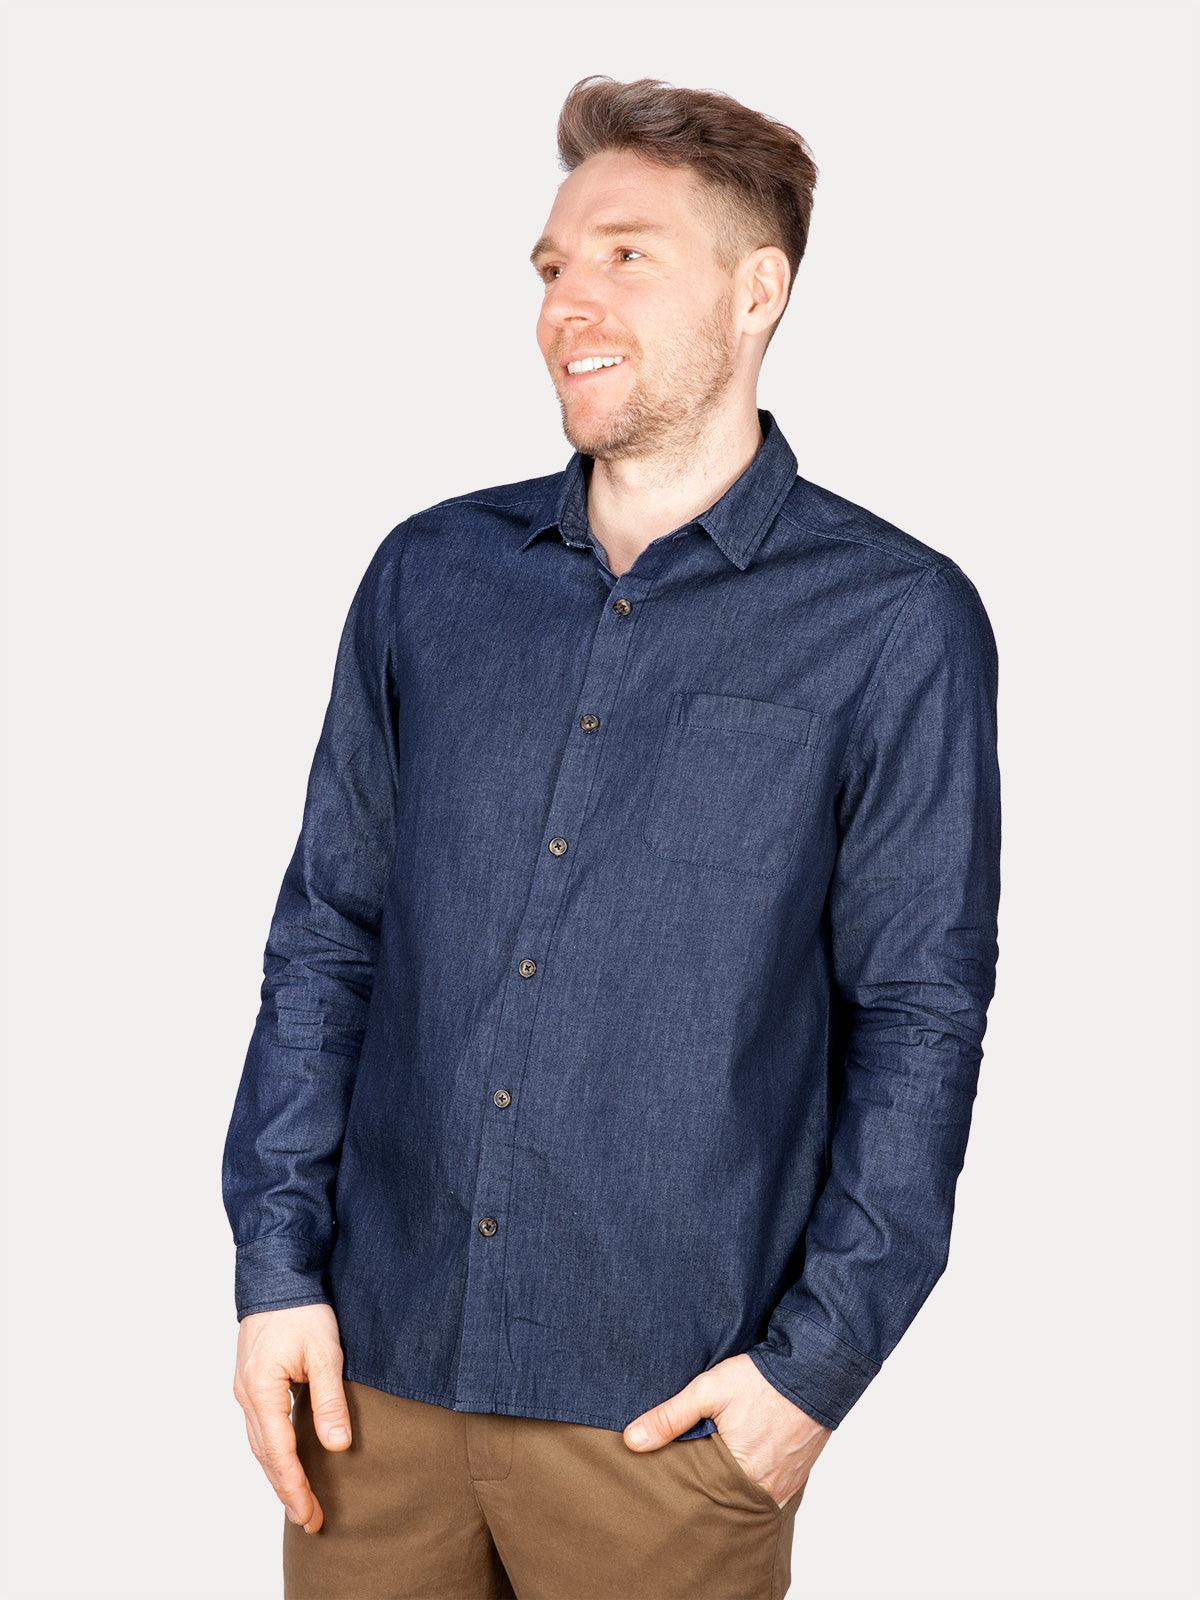 Rovigo Shirt - Chambray Blue - Thought Clothing UK